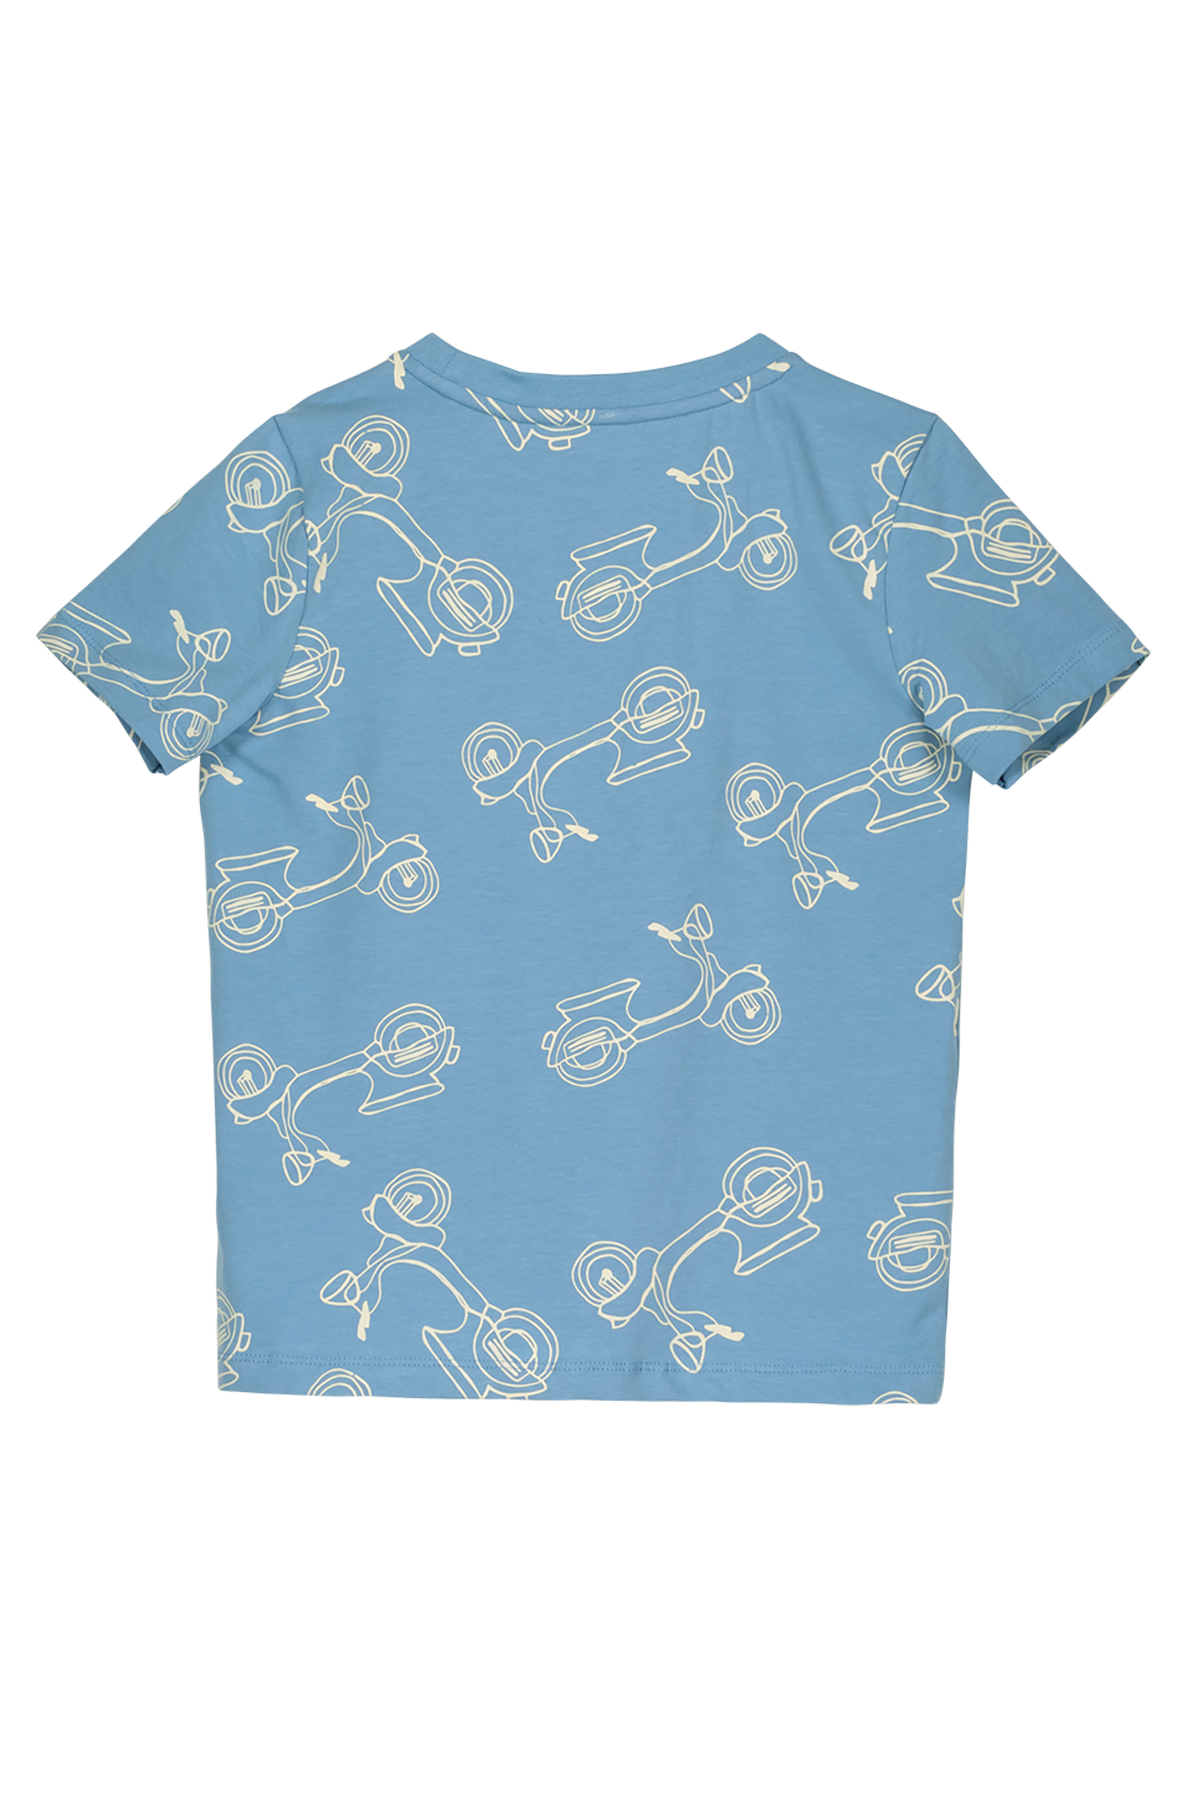 T-Shirt Boys scooter t-shirt